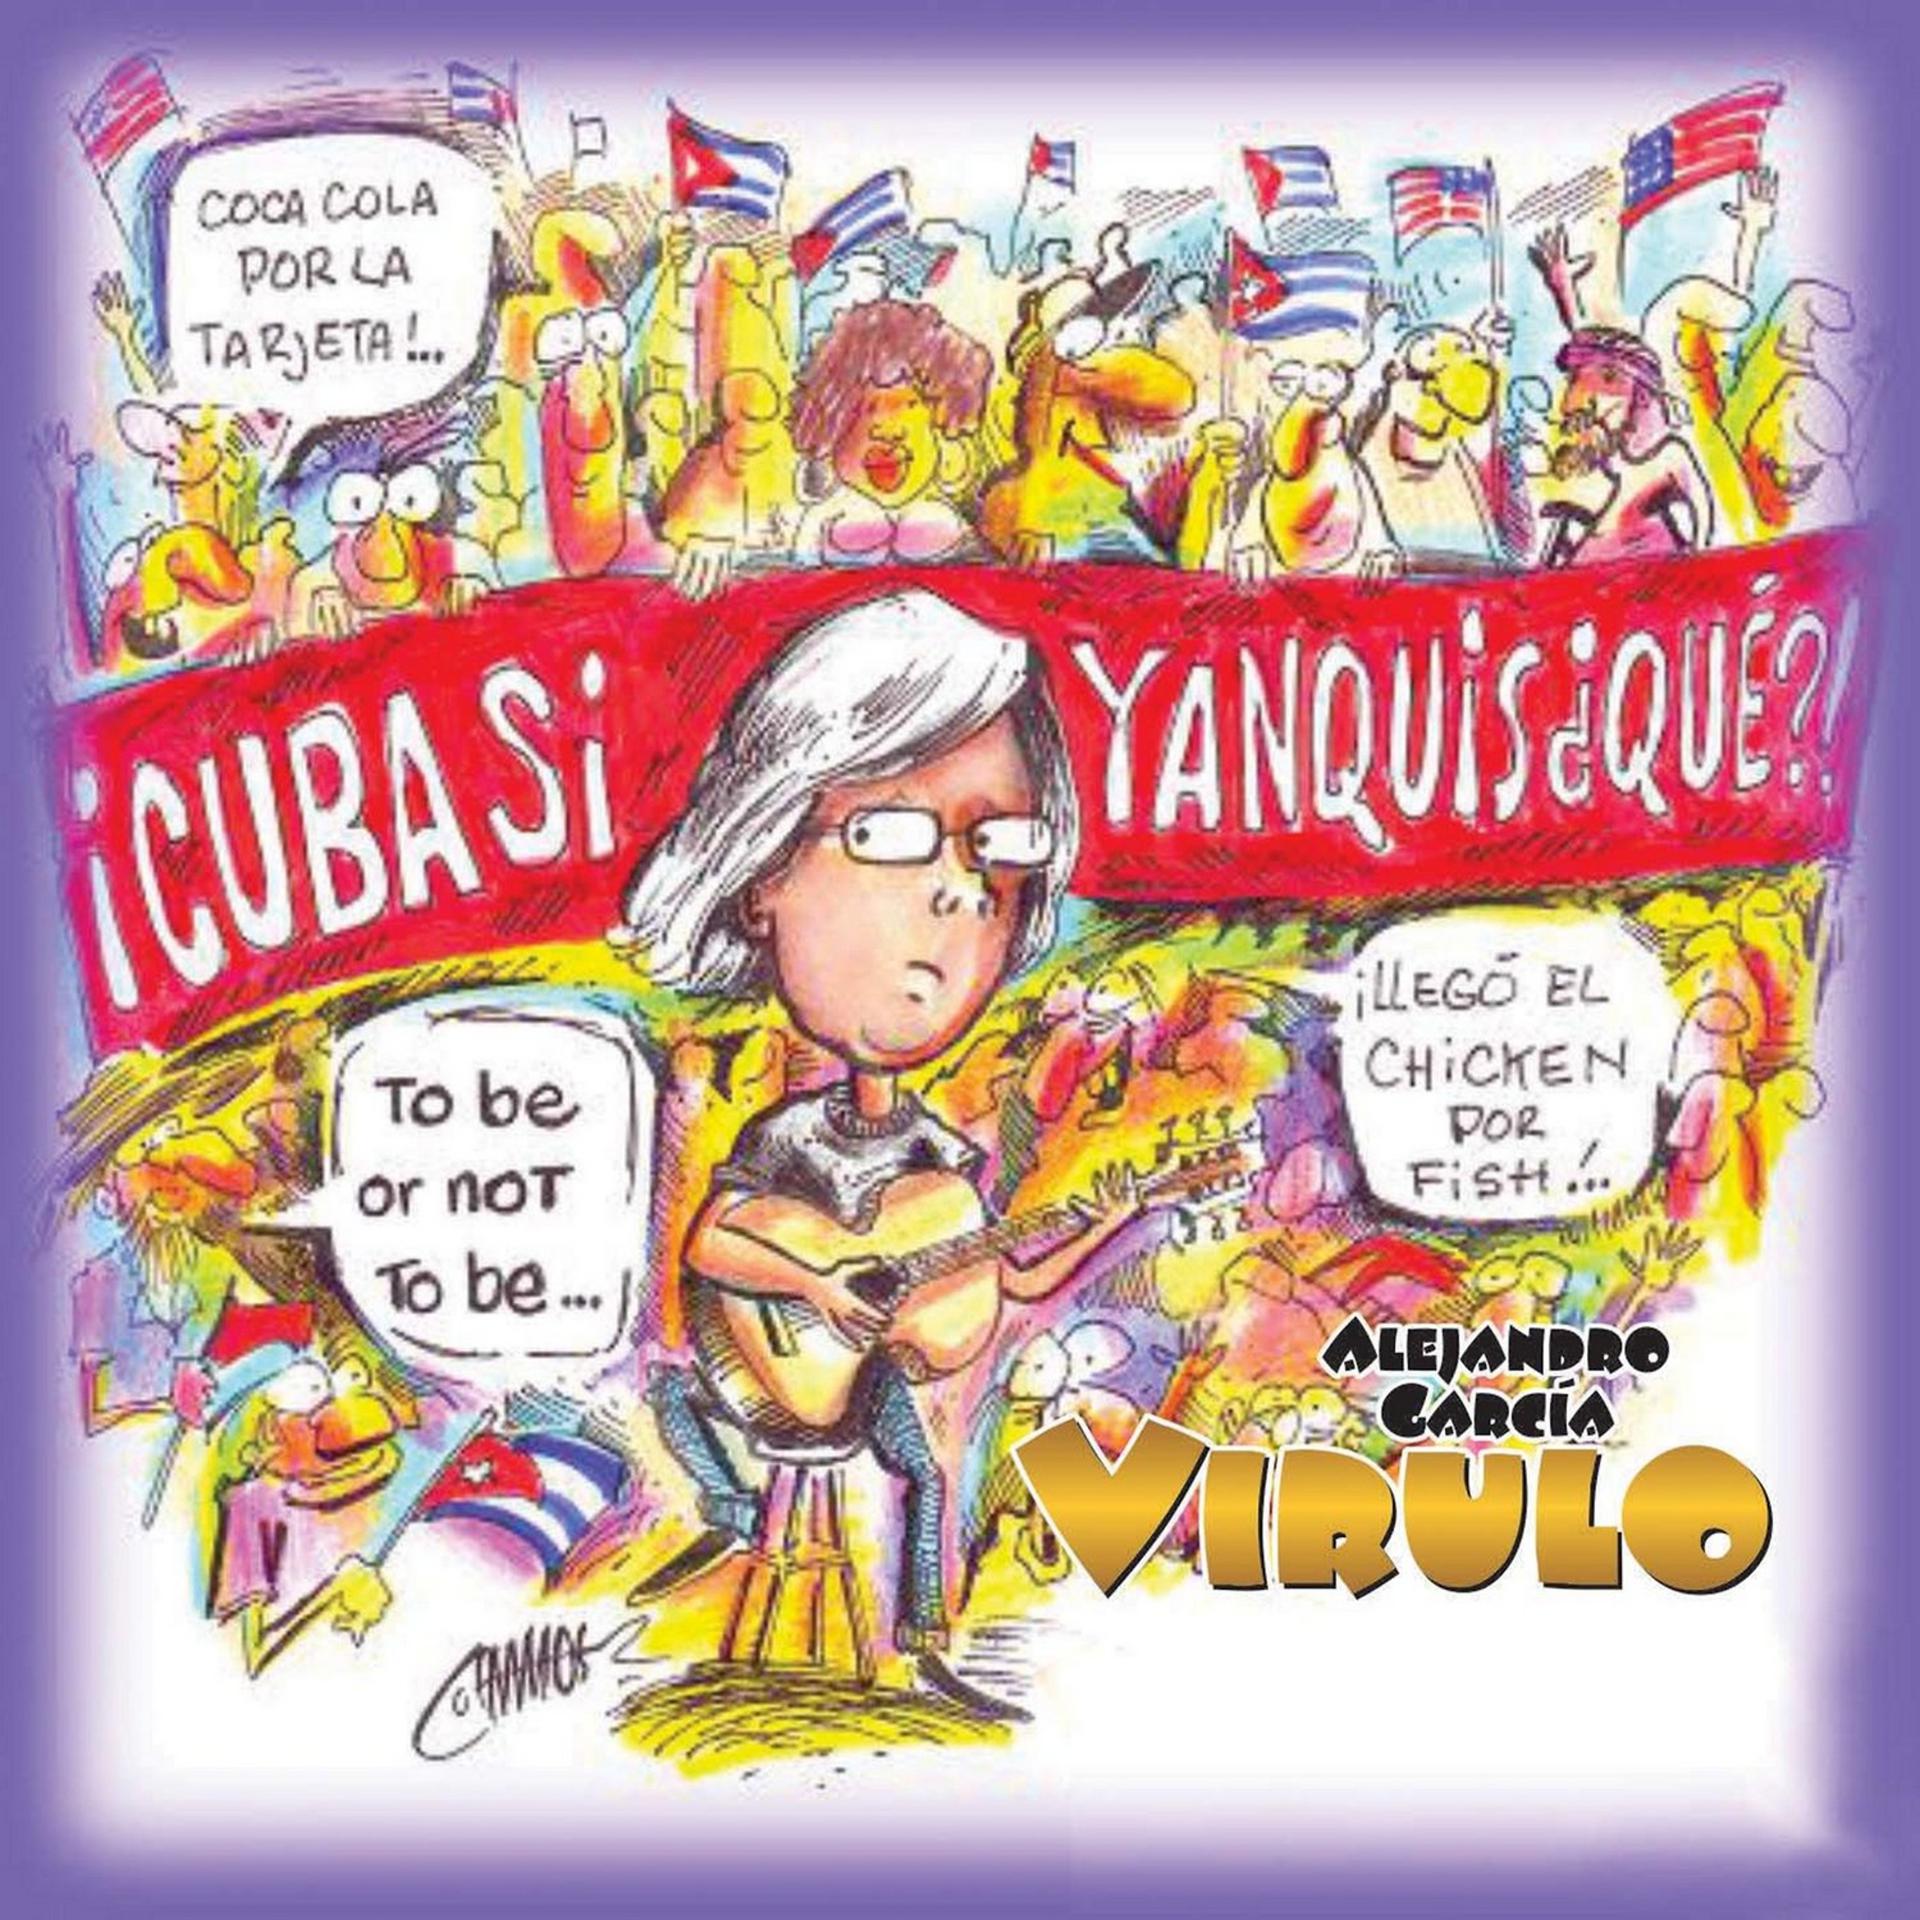 Постер альбома Cuba Sí, Yanquis...Qué?!